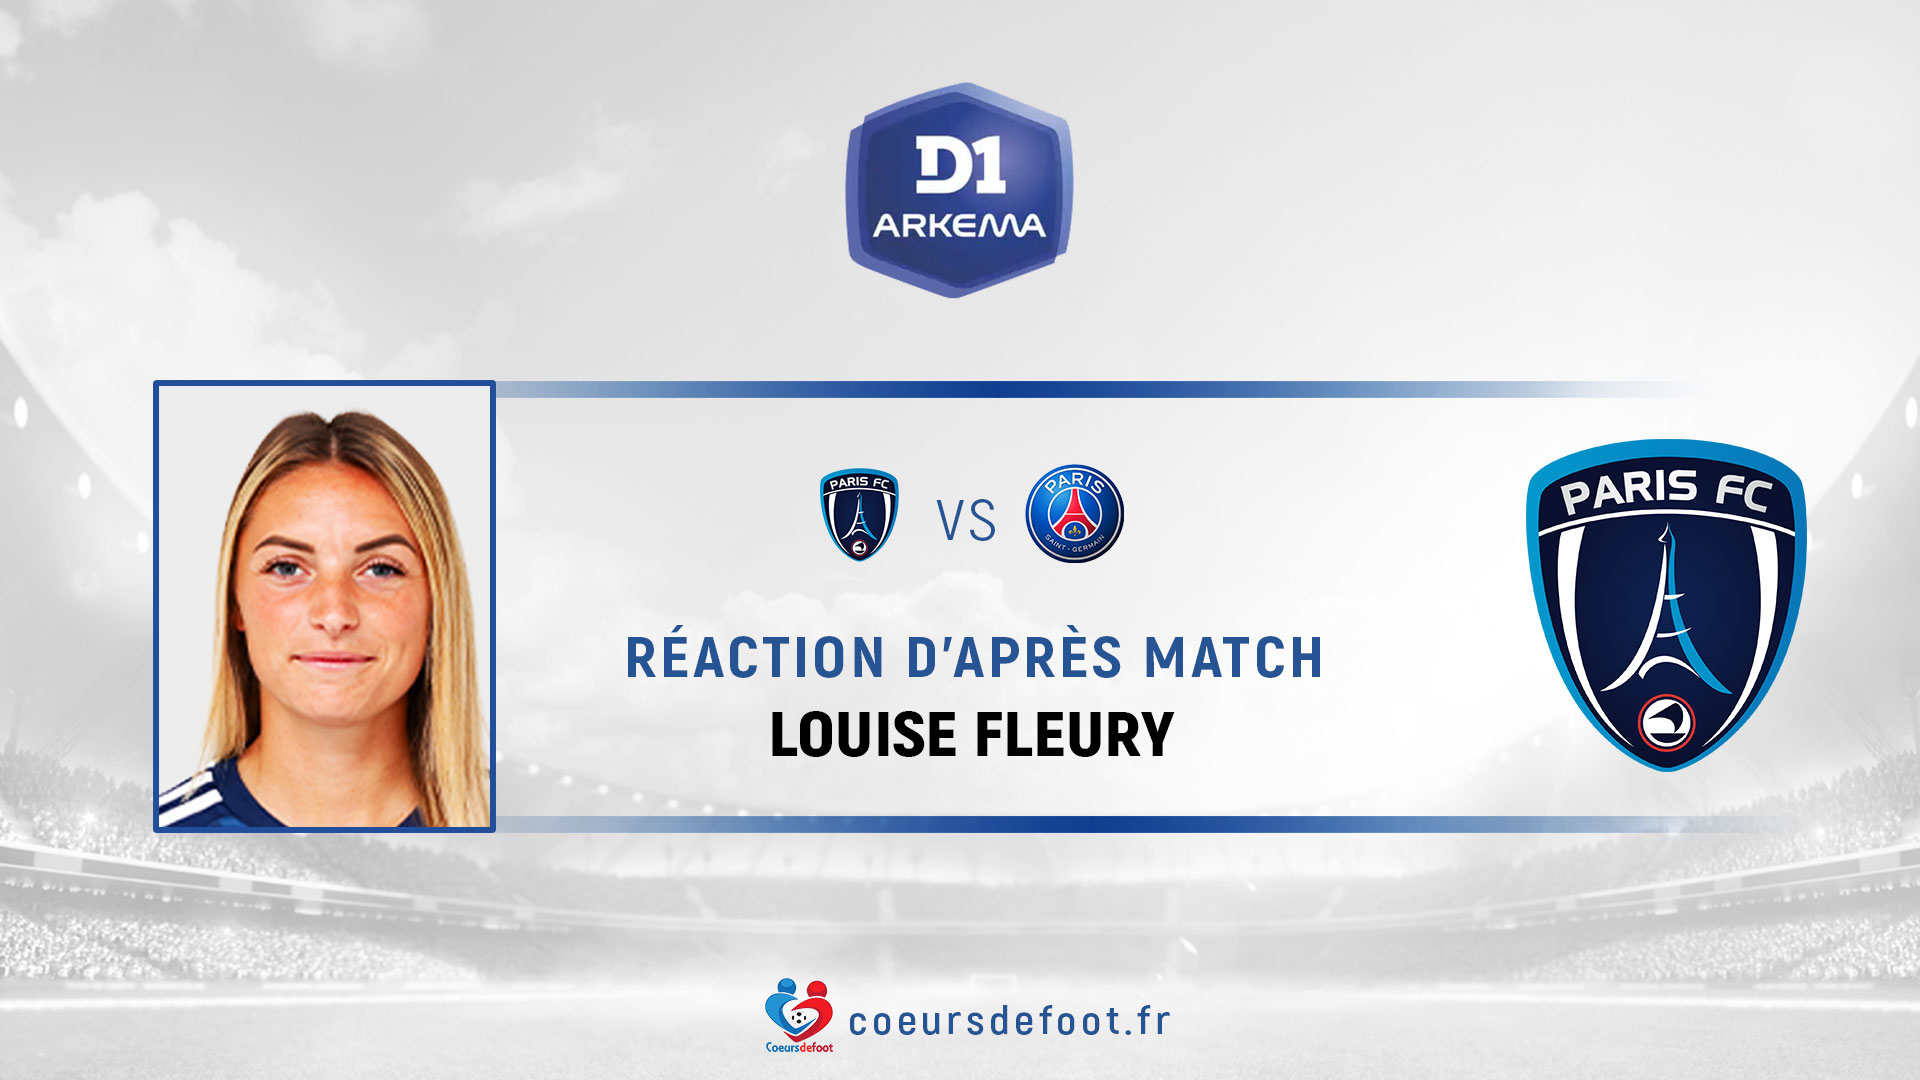 Louise Fleury (Paris FC) : « C'est vrai qu'on était plus proche contre Lyon que aujourd'hui face au PSG »